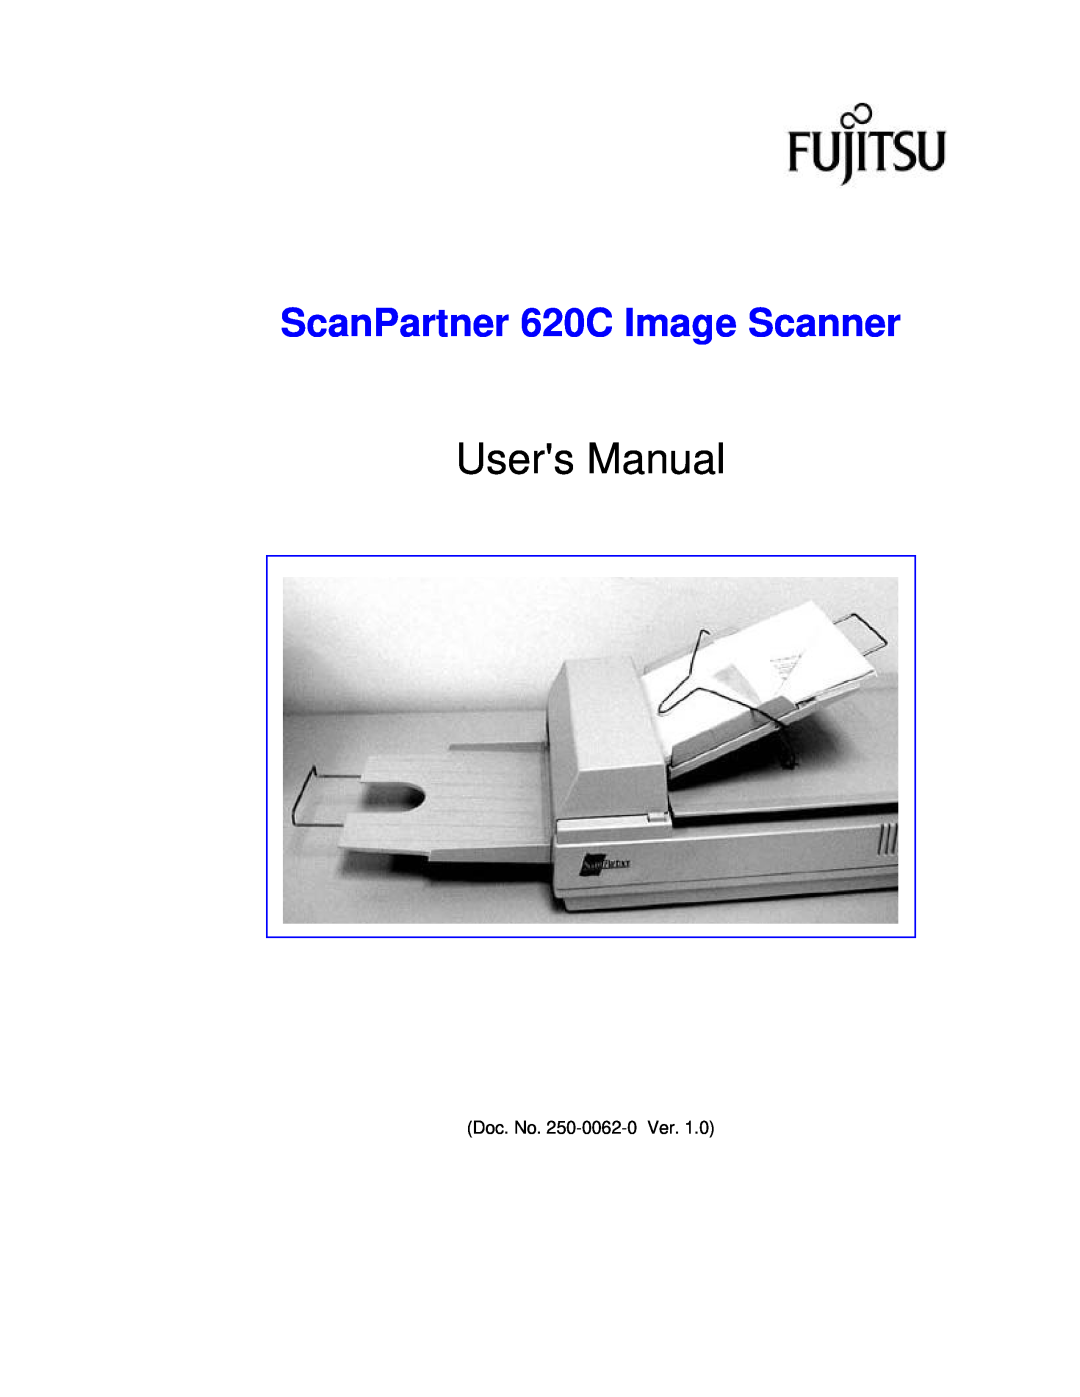 Fujitsu user manual ScanPartner 620C Image Scanner 